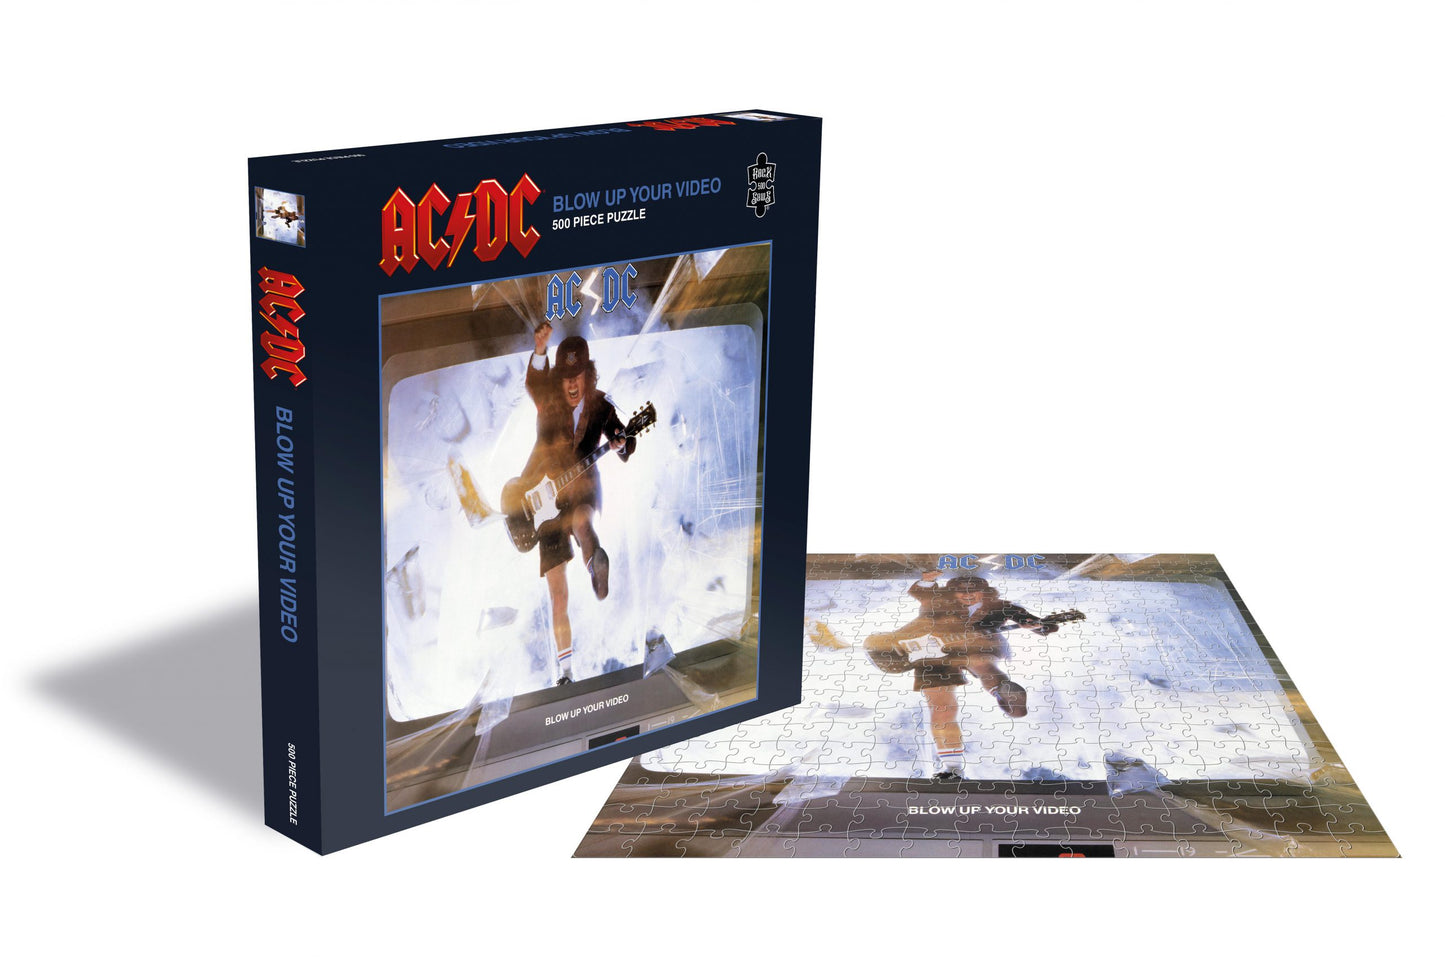 AC/DC - Blaas je video op, puzzel van 500 stukjes